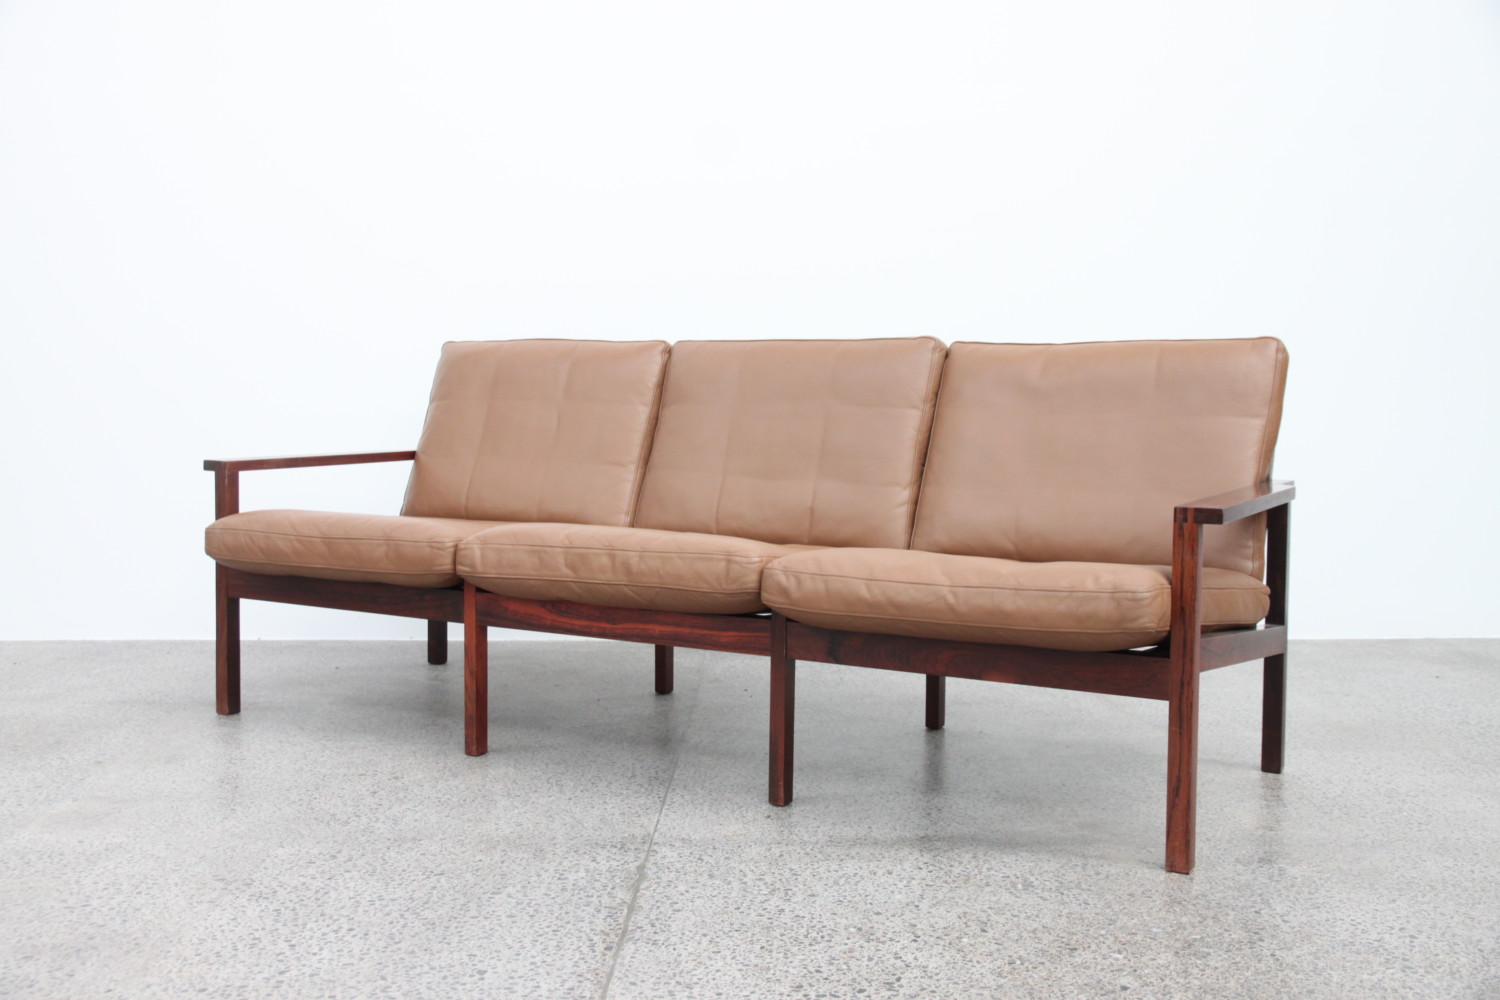 Rosewood & Leather Sofa